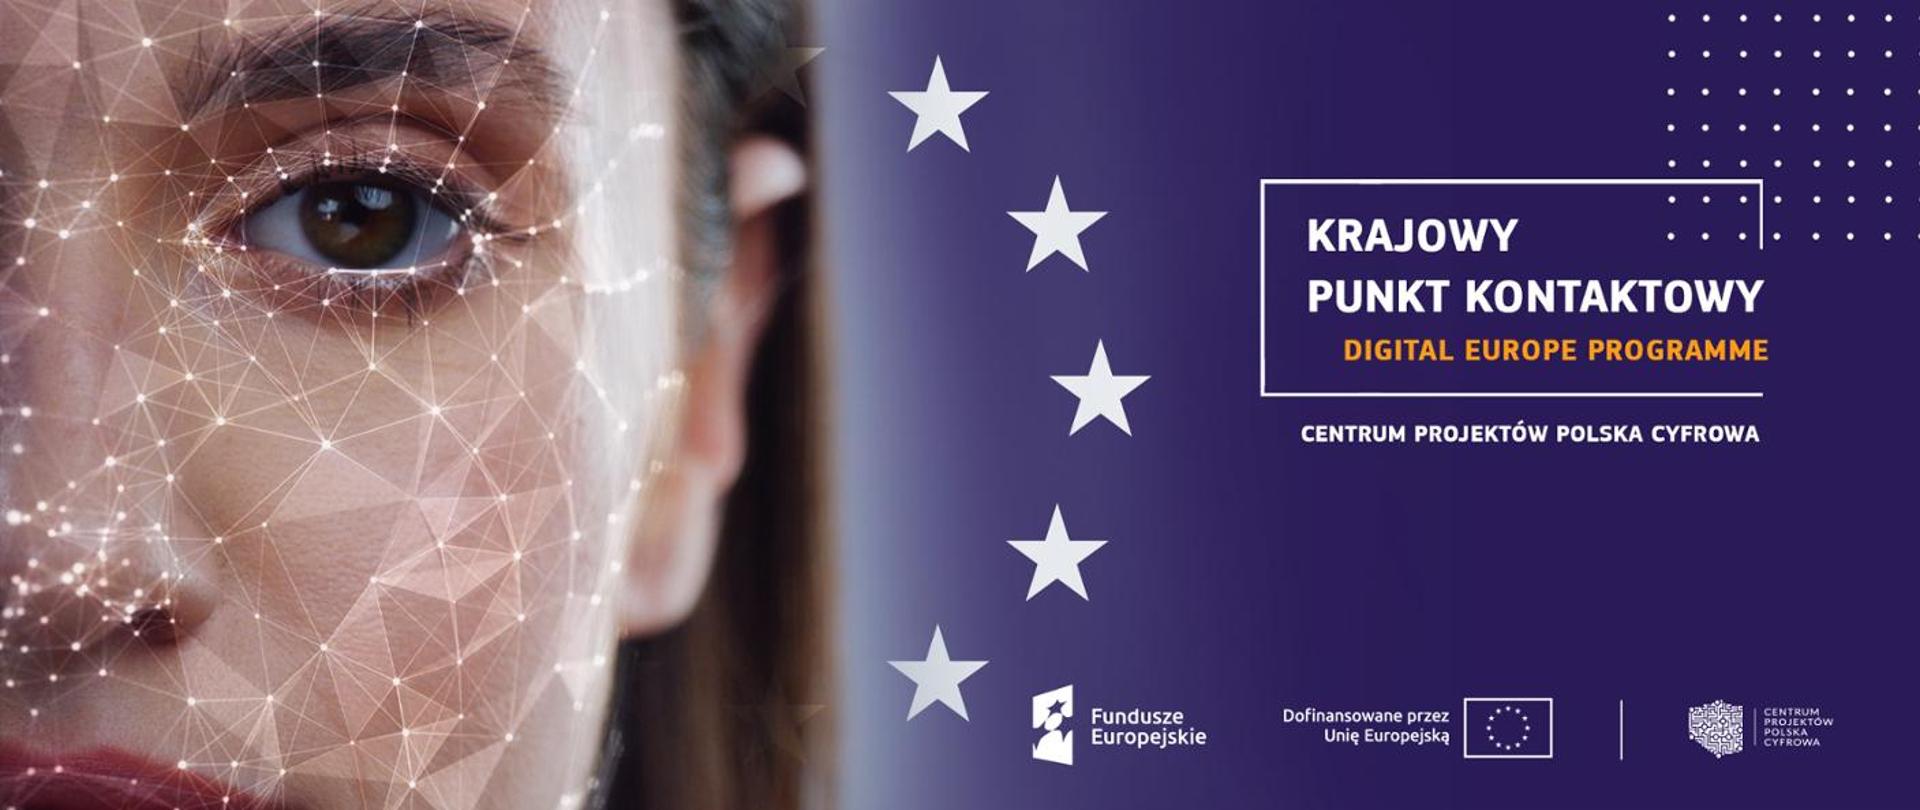 Krajowy Punkt Kontaktowy Programu Cyfrowa Europa w Centrum Projektów Polska Cyfrowa, połączenie flagi UE i logo Funduszy Europejskich, dofinansowania przez UE i logo Centrum Projektów Polska Cyfrowa 